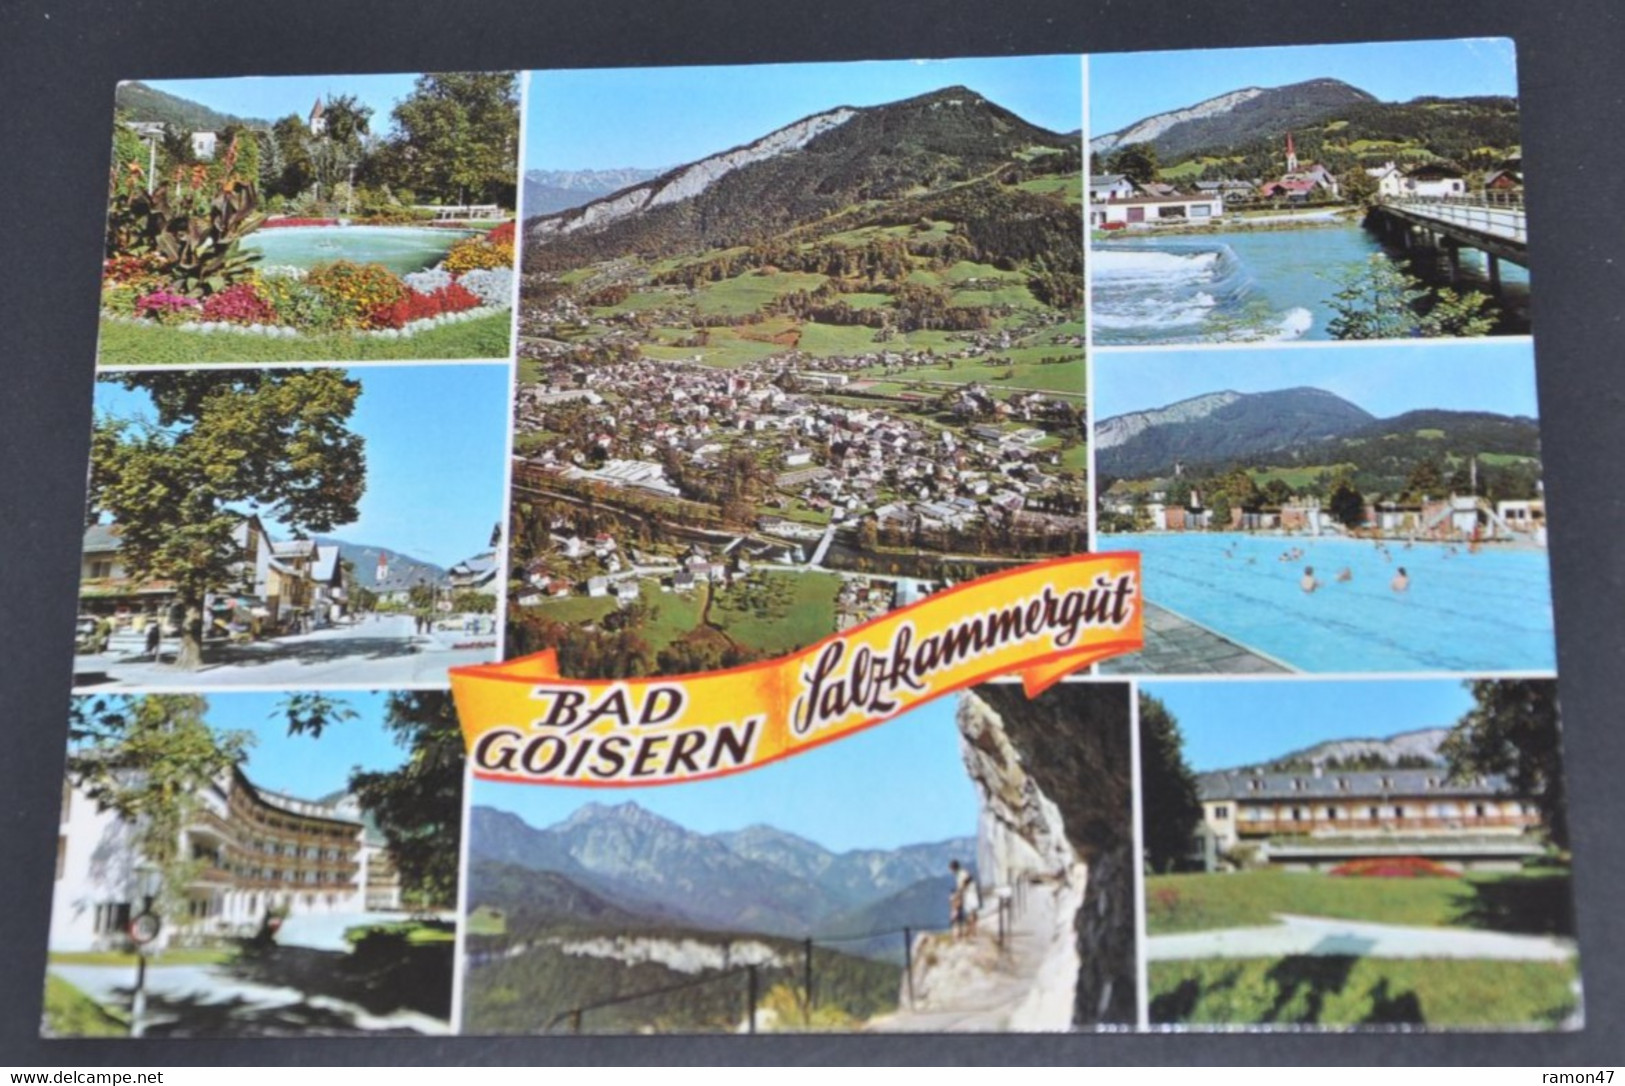 Bad Goisern, Salzkammergut - Cosy Kunstverlag Brigitte David-Gründler, Salzburg - # S 790 - Bad Goisern